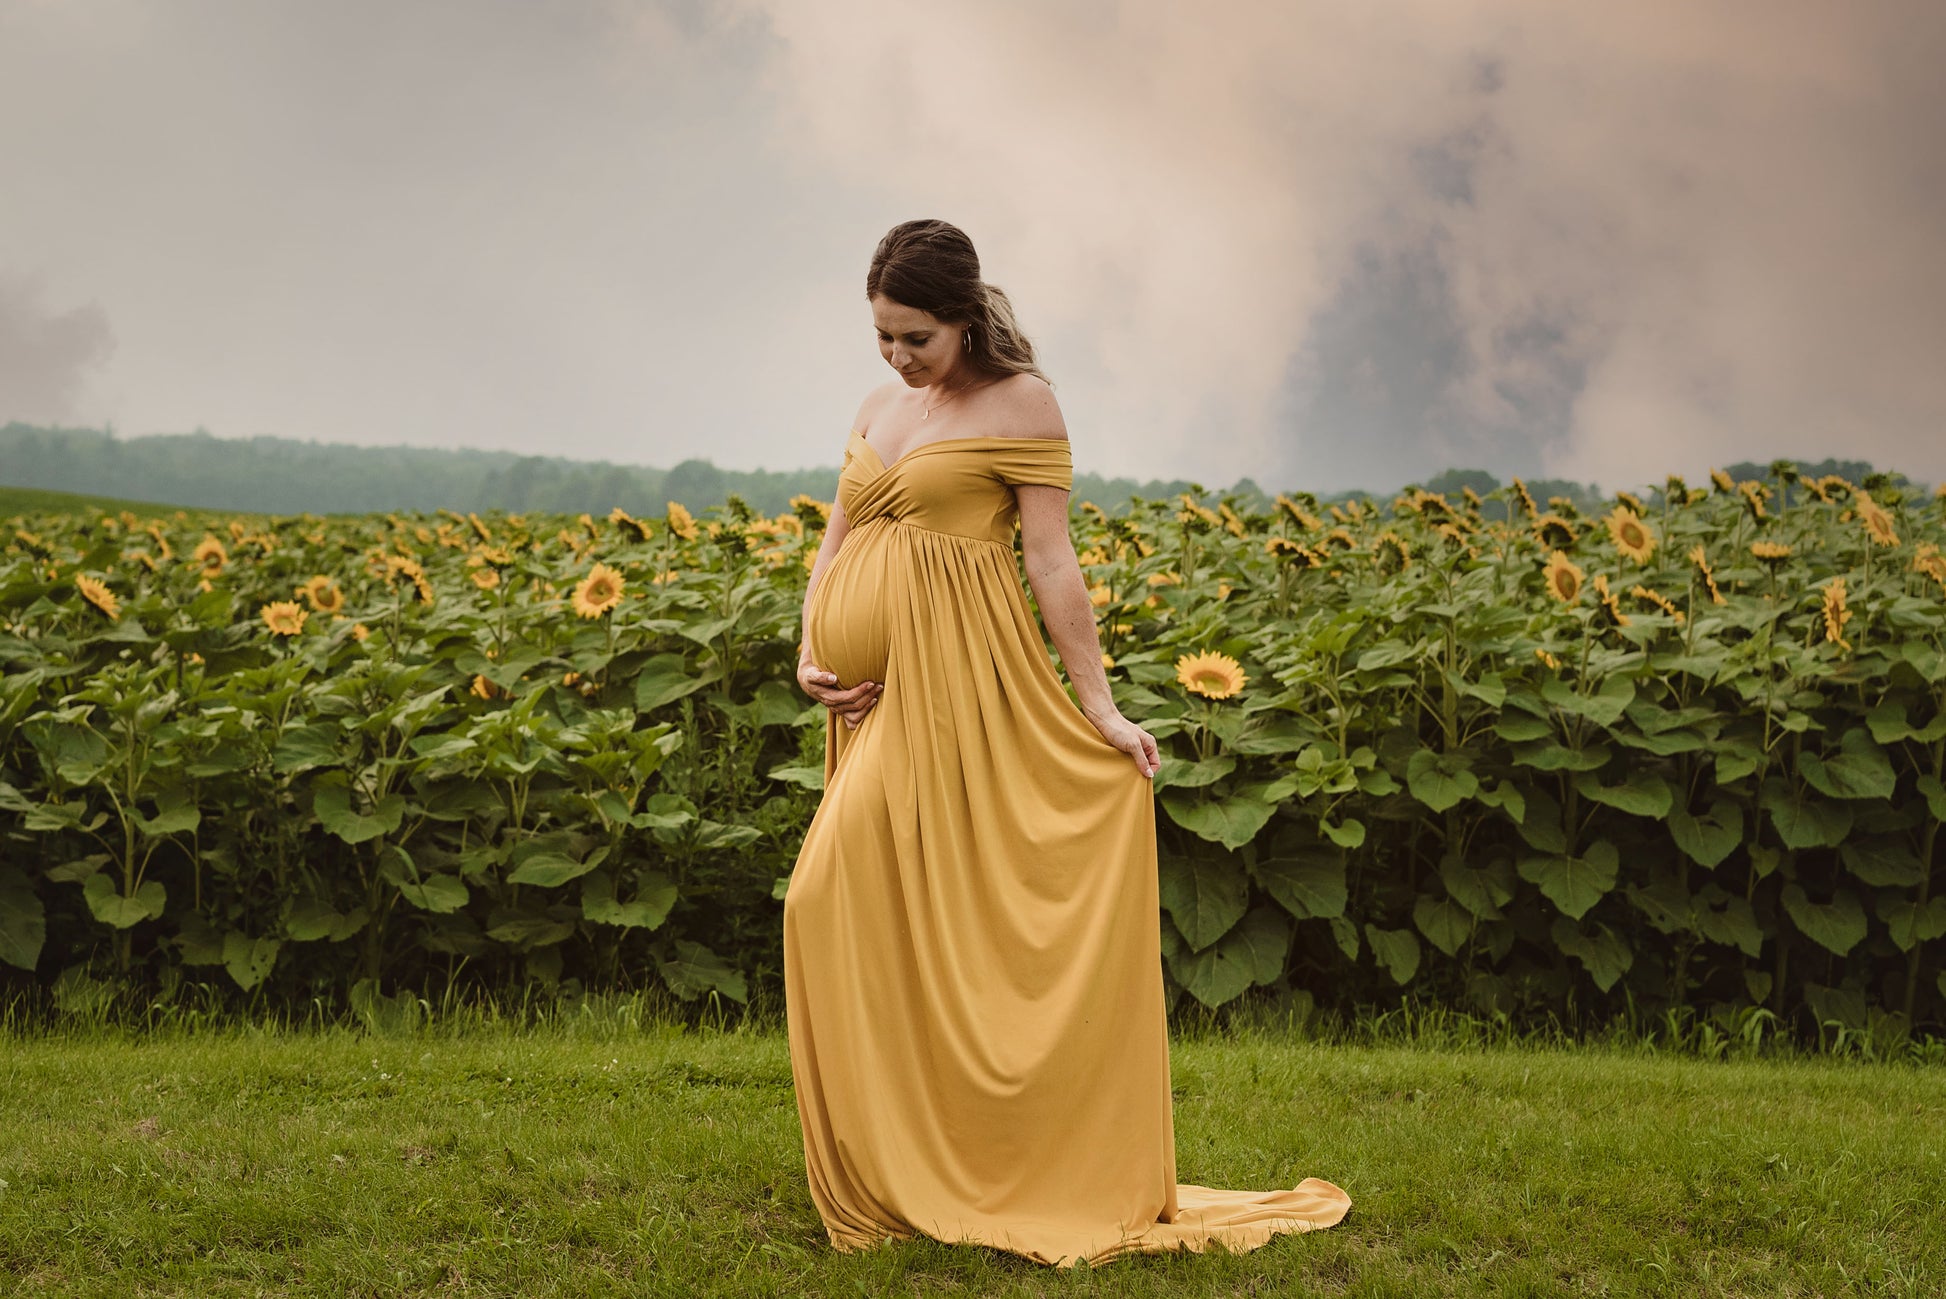 Mustard Yellow Flowy Gown – Sugar Bump Gown Rentals